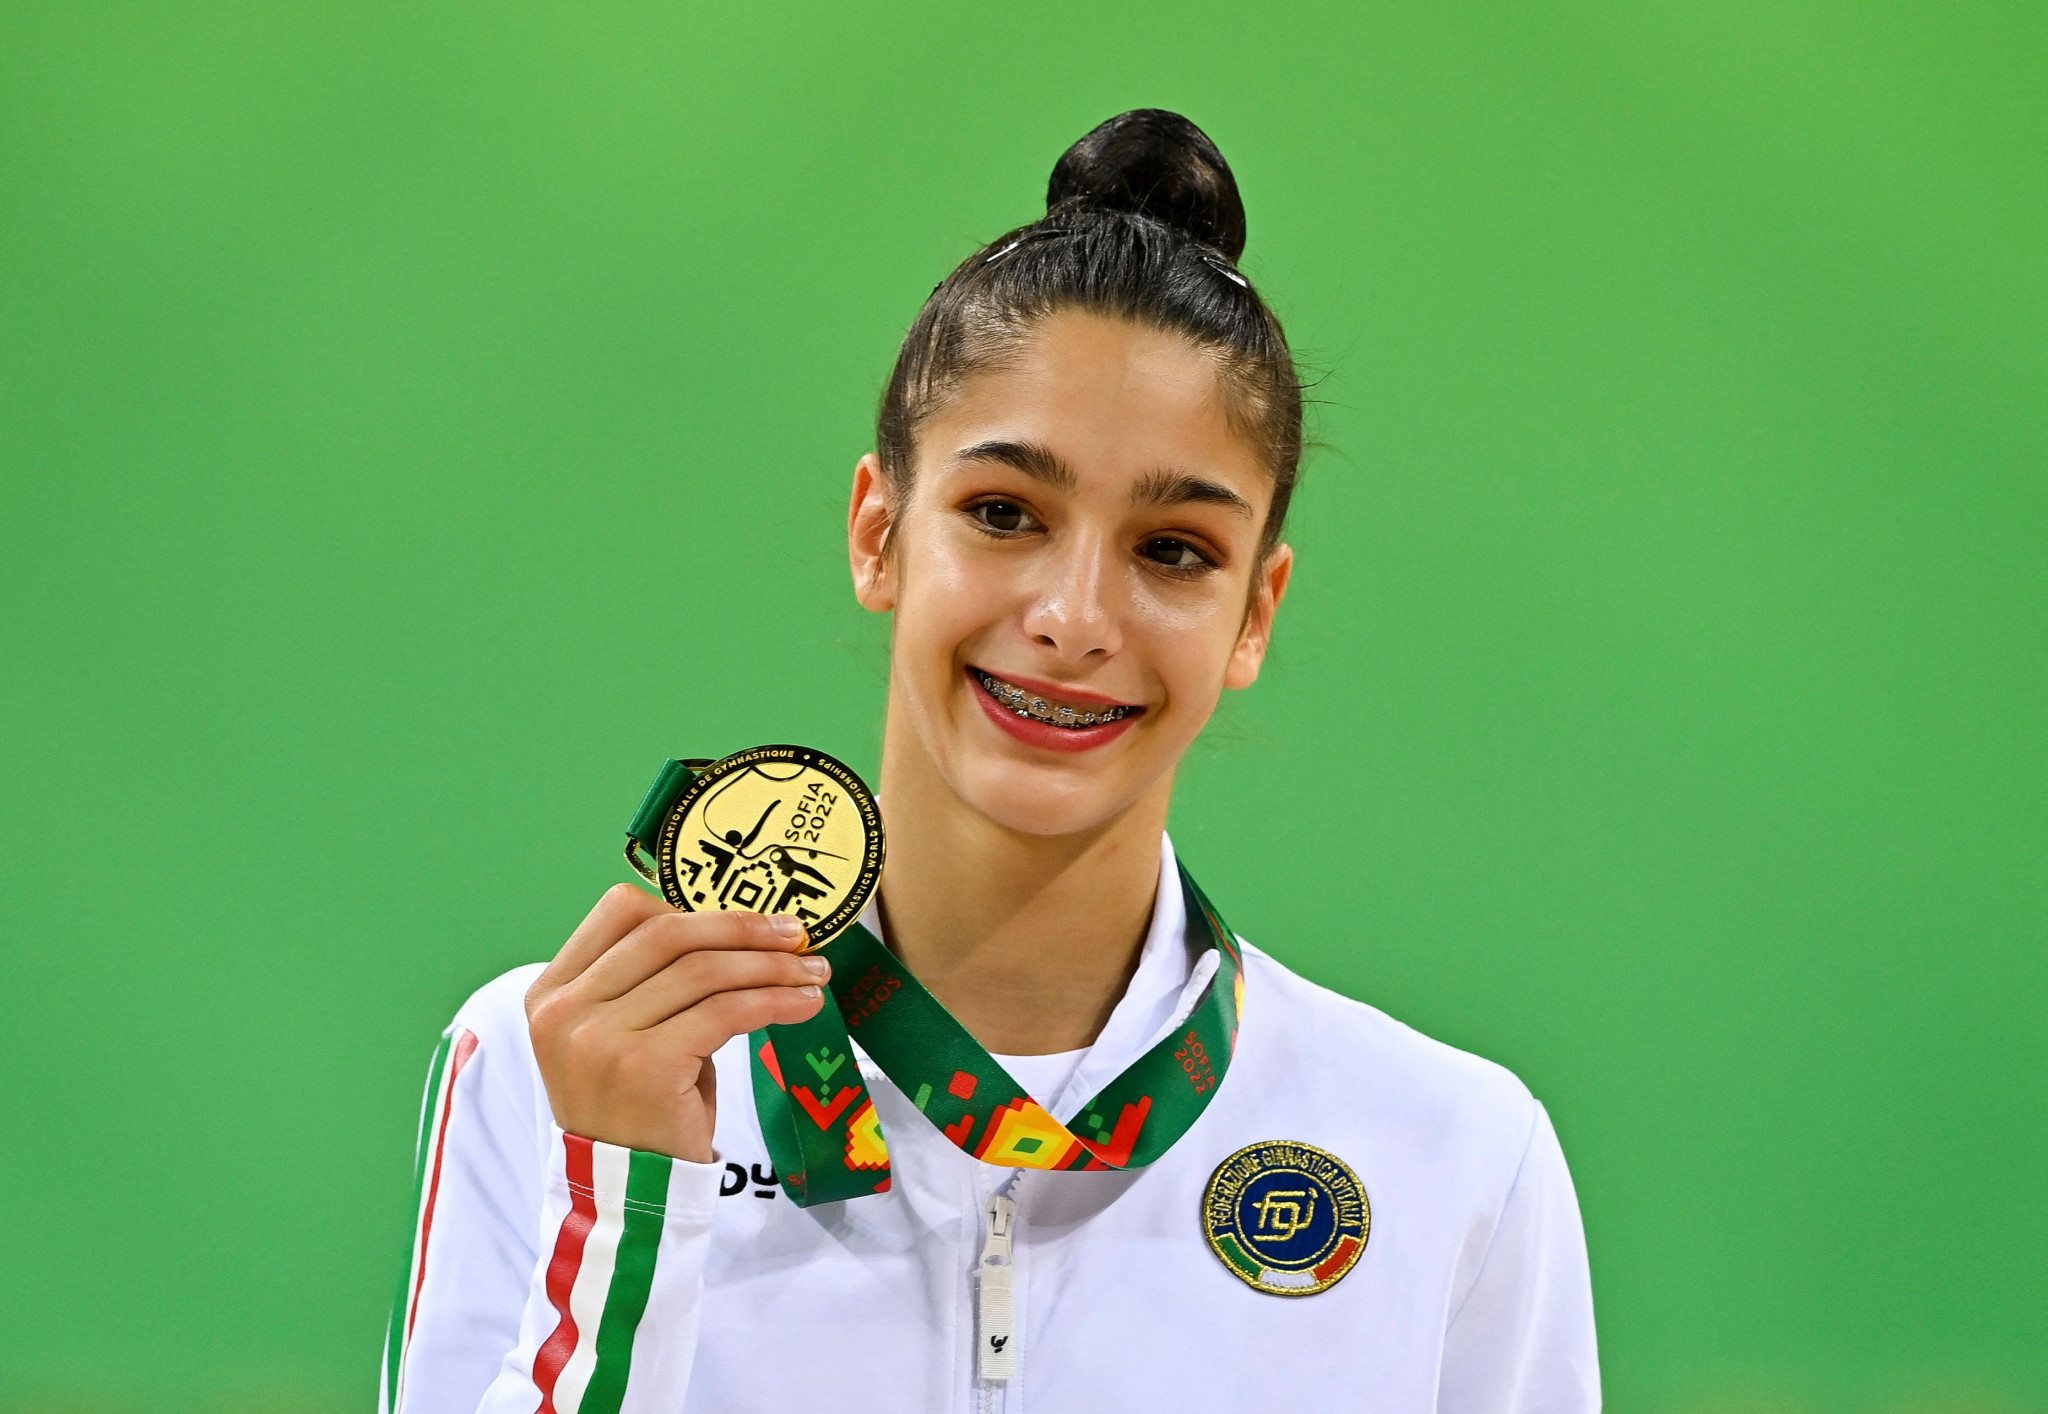 Raffaeli wins third gold of Rhythmic Gymnastics World Championships in Sofia